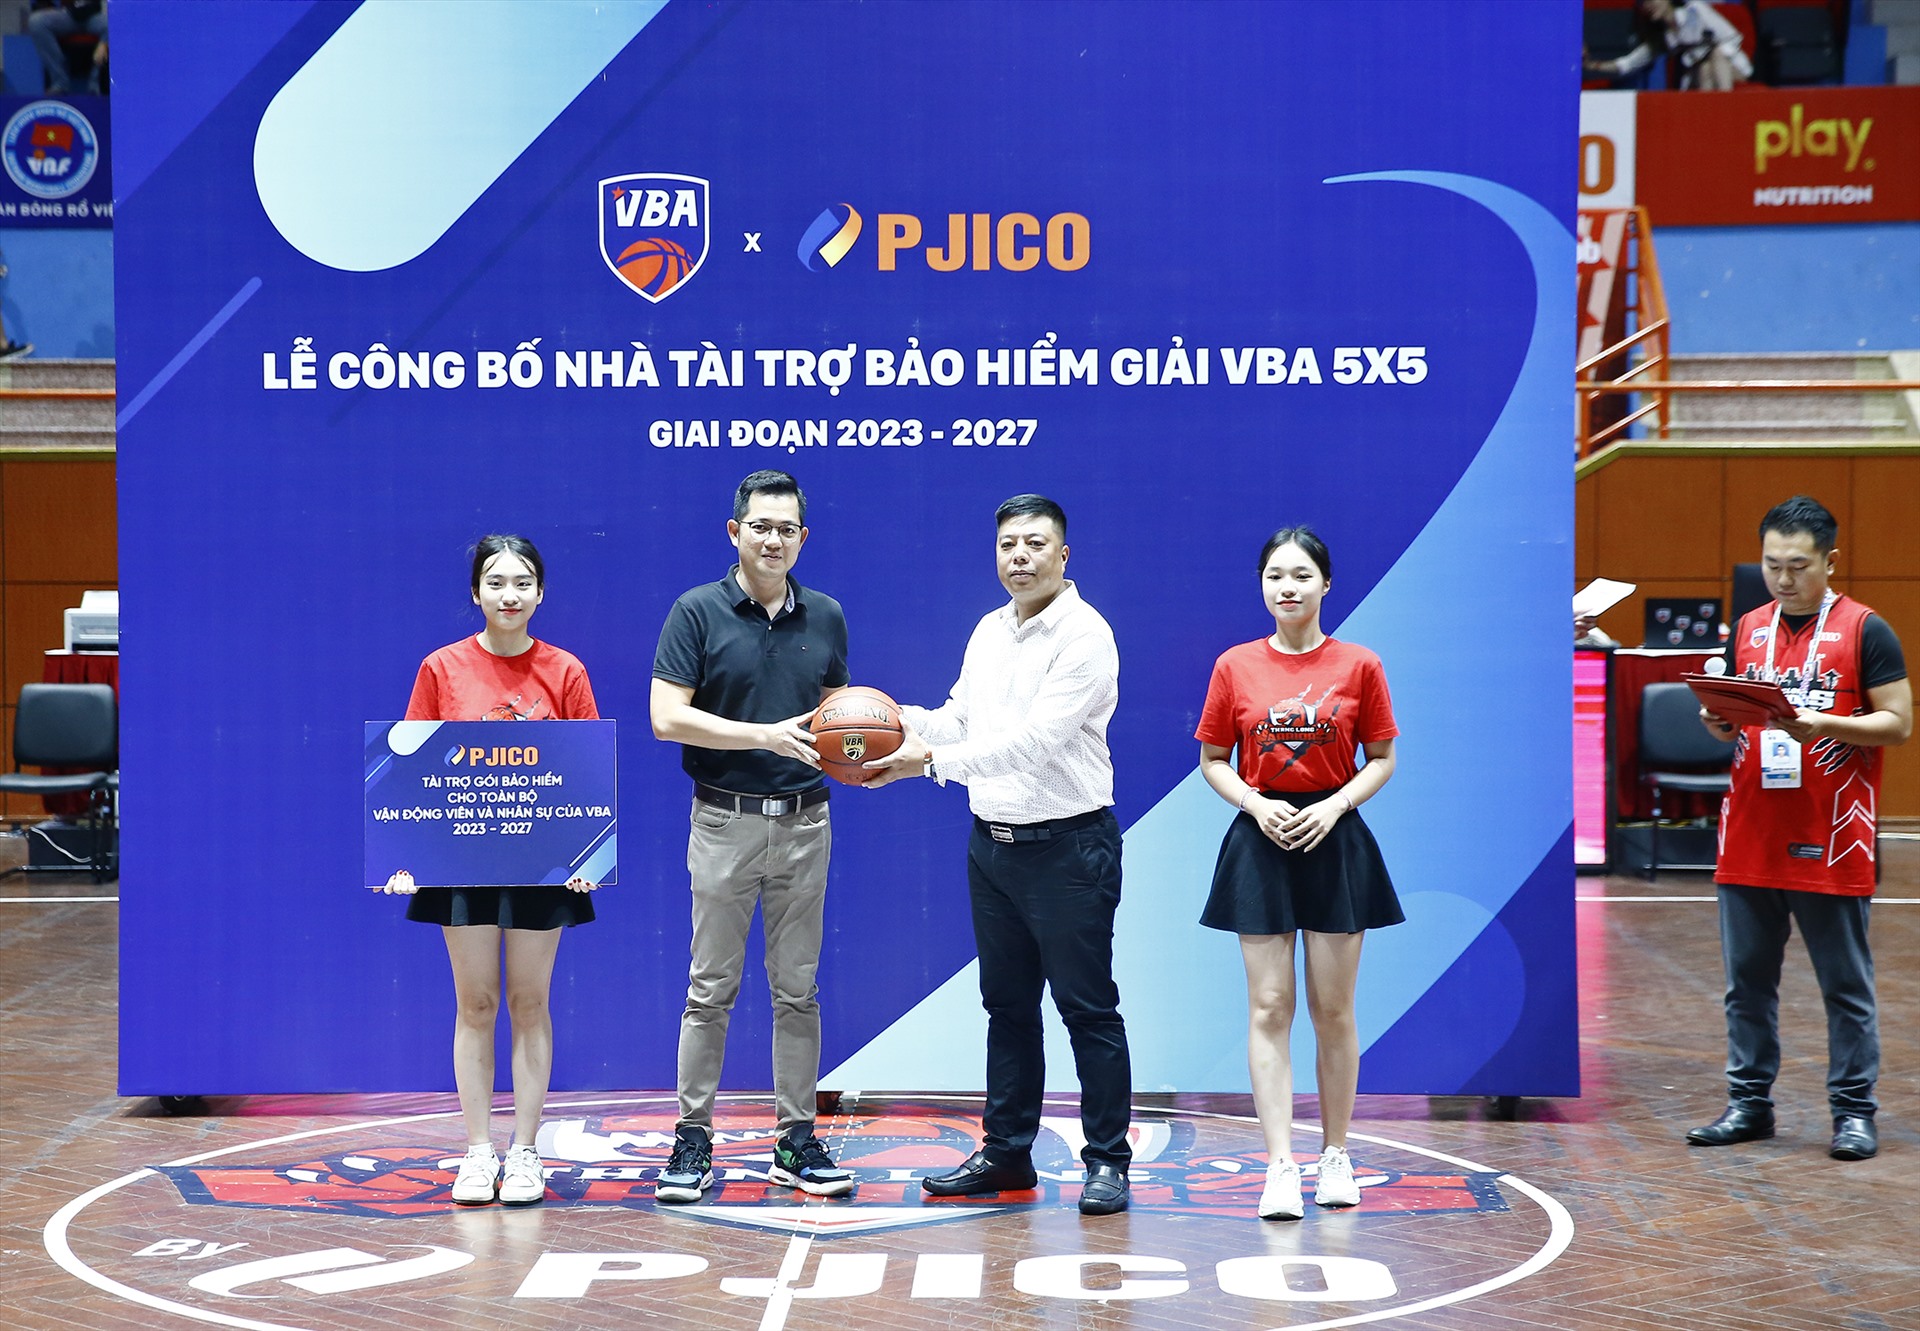 Đại diện VBA (trái) và PJICO (phải) trao bóng tại lễ công bố PJICO chính thức trở thành Nhà tài trợ bảo hiểm đồng hành cùng mùa giải VBA 5x5 xuyên suốt 5 năm (2023-2027).